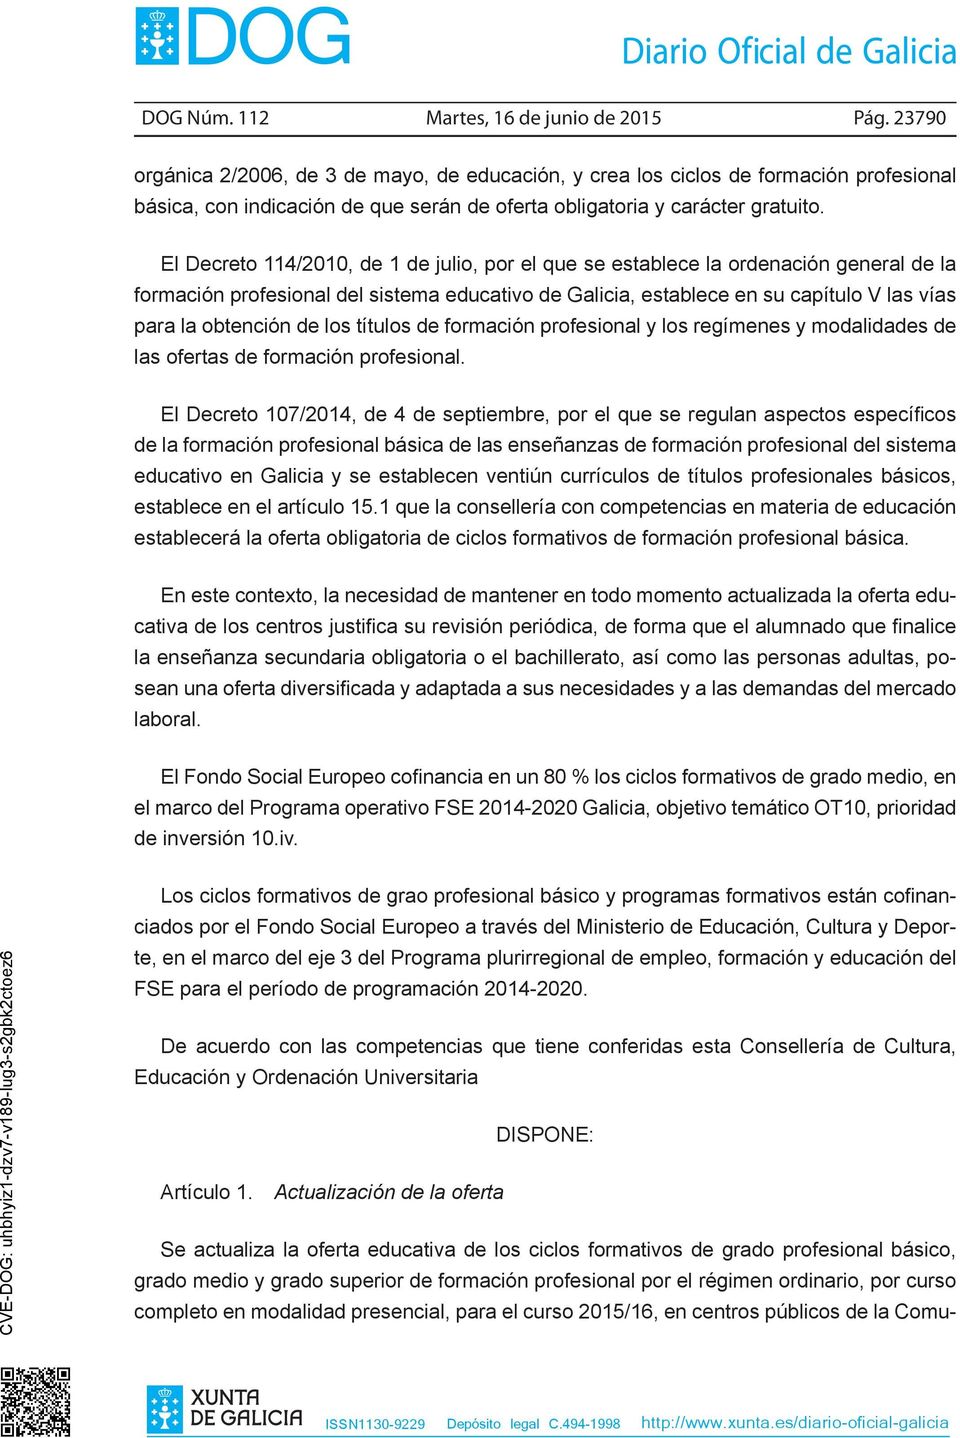 El Decreto 114/2010, de 1 de julio, por el que se establece la ordenación general de la formación profesional del sistema educativo de Galicia, establece en su capítulo V las vías para la obtención